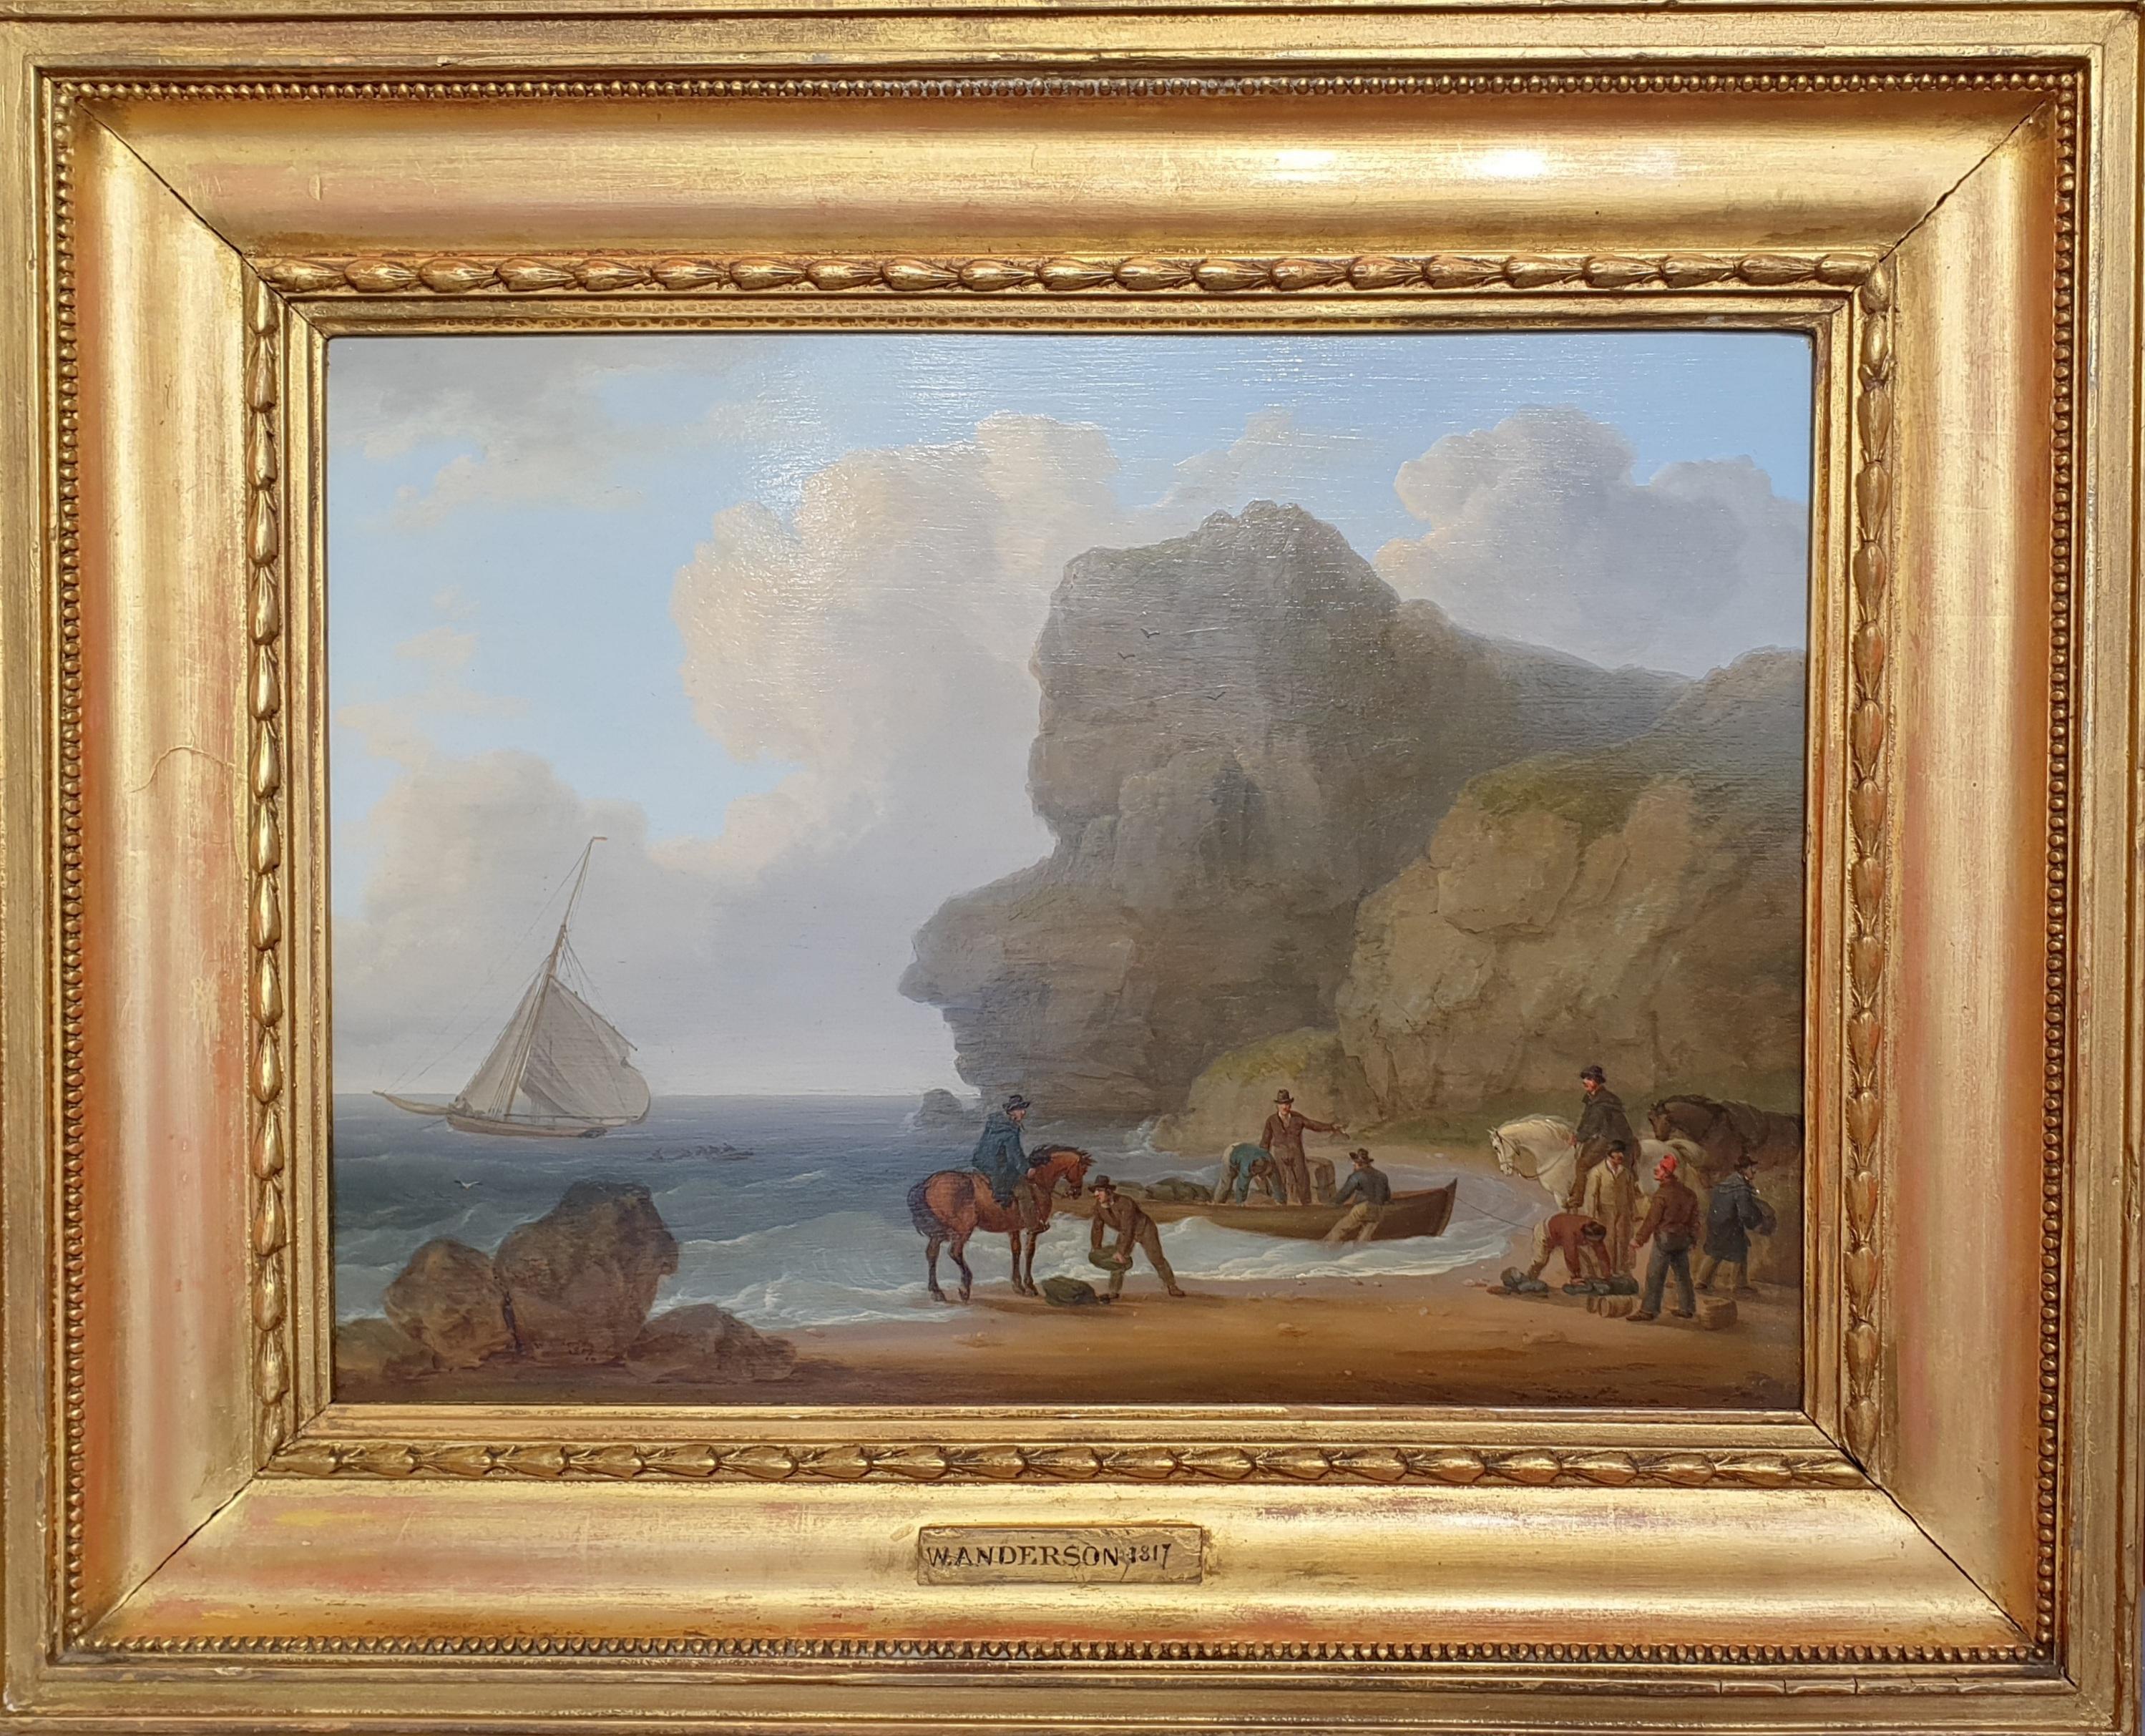 Landscape Painting William Anderson - Peinture marine bord de mer bateau de contrebandiers écossais 19ème